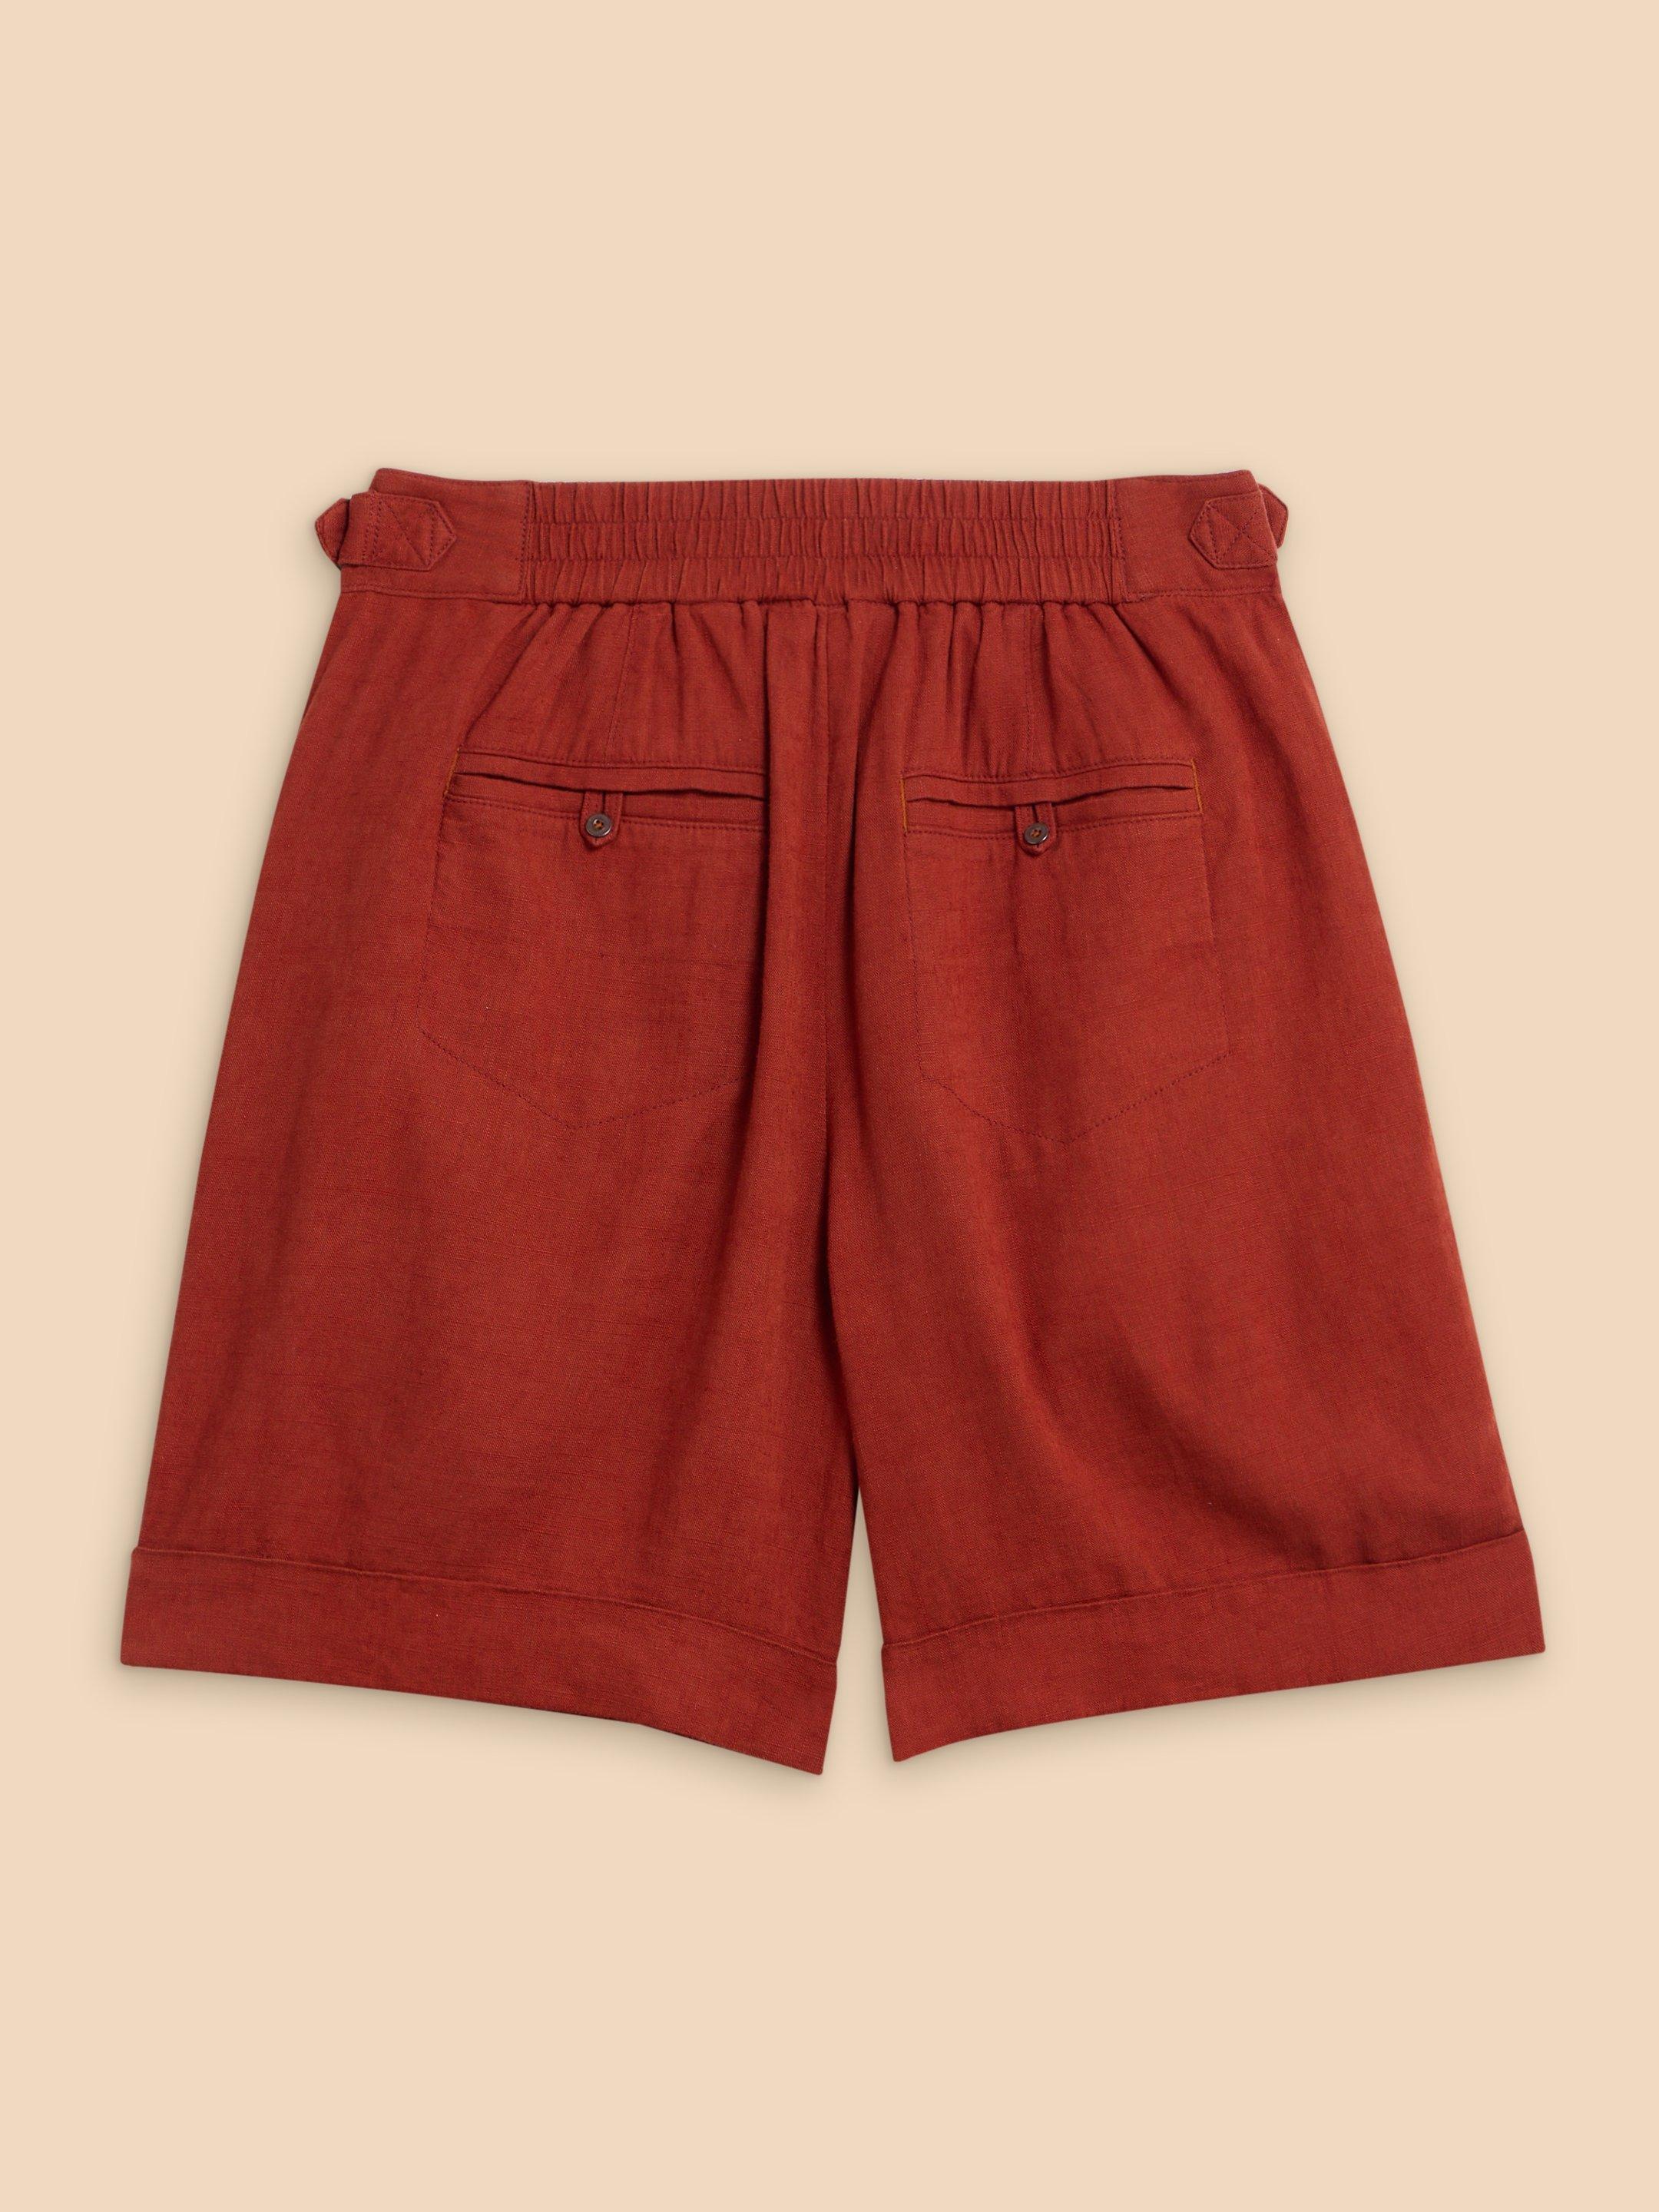 Una Shorts in DK RED - FLAT BACK